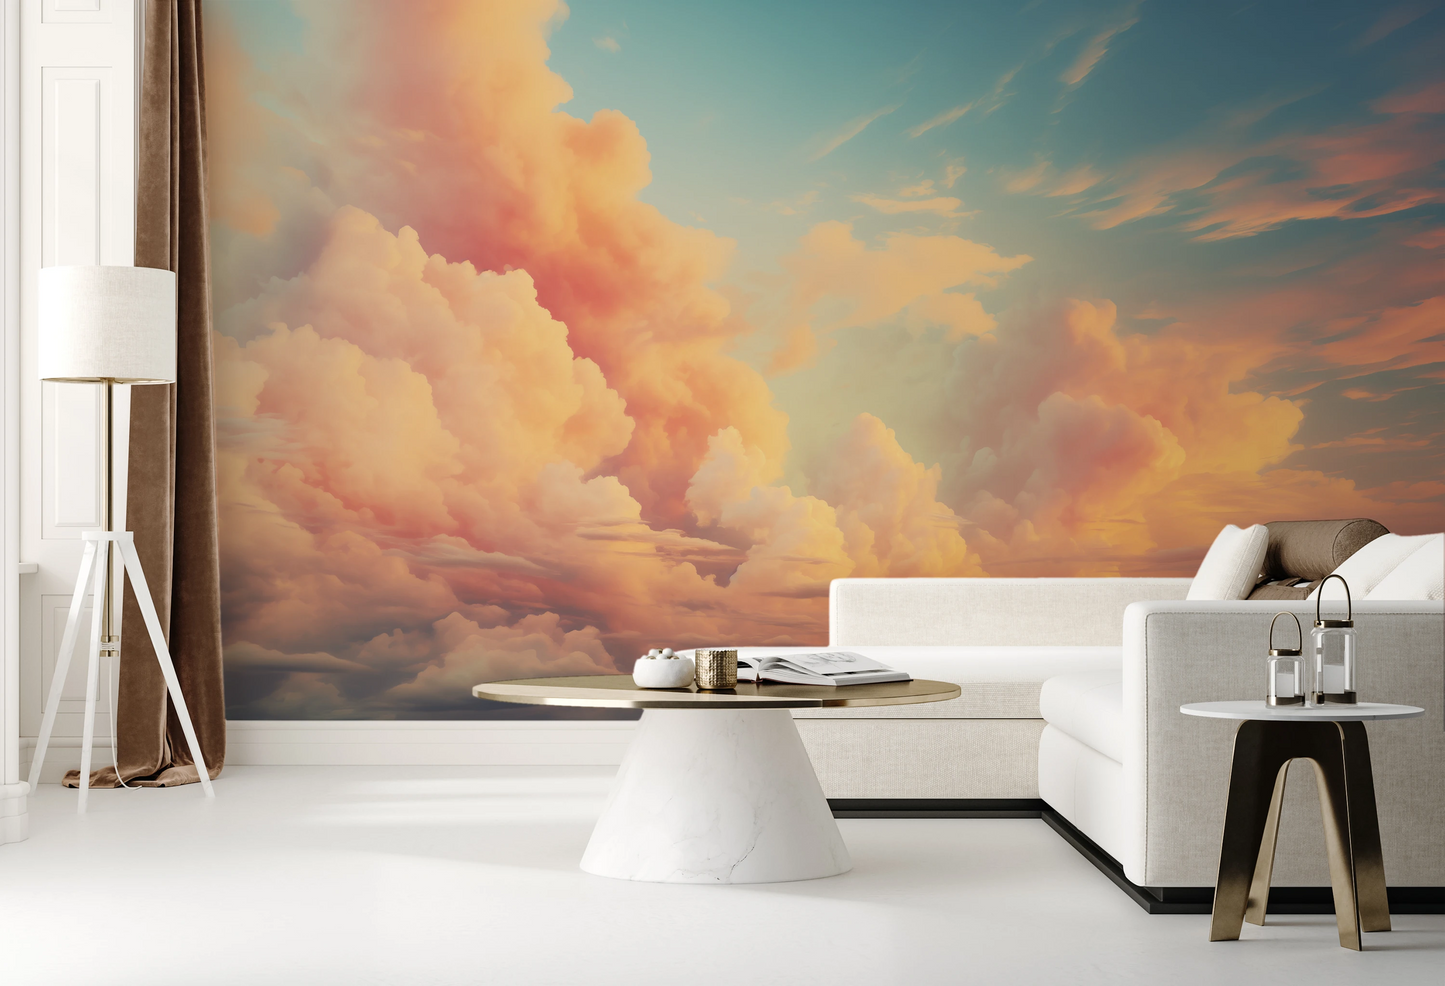 Wzór fototapety malowanej o nazwie Cotton Clouds pokazanej w aranżacji wnętrza.